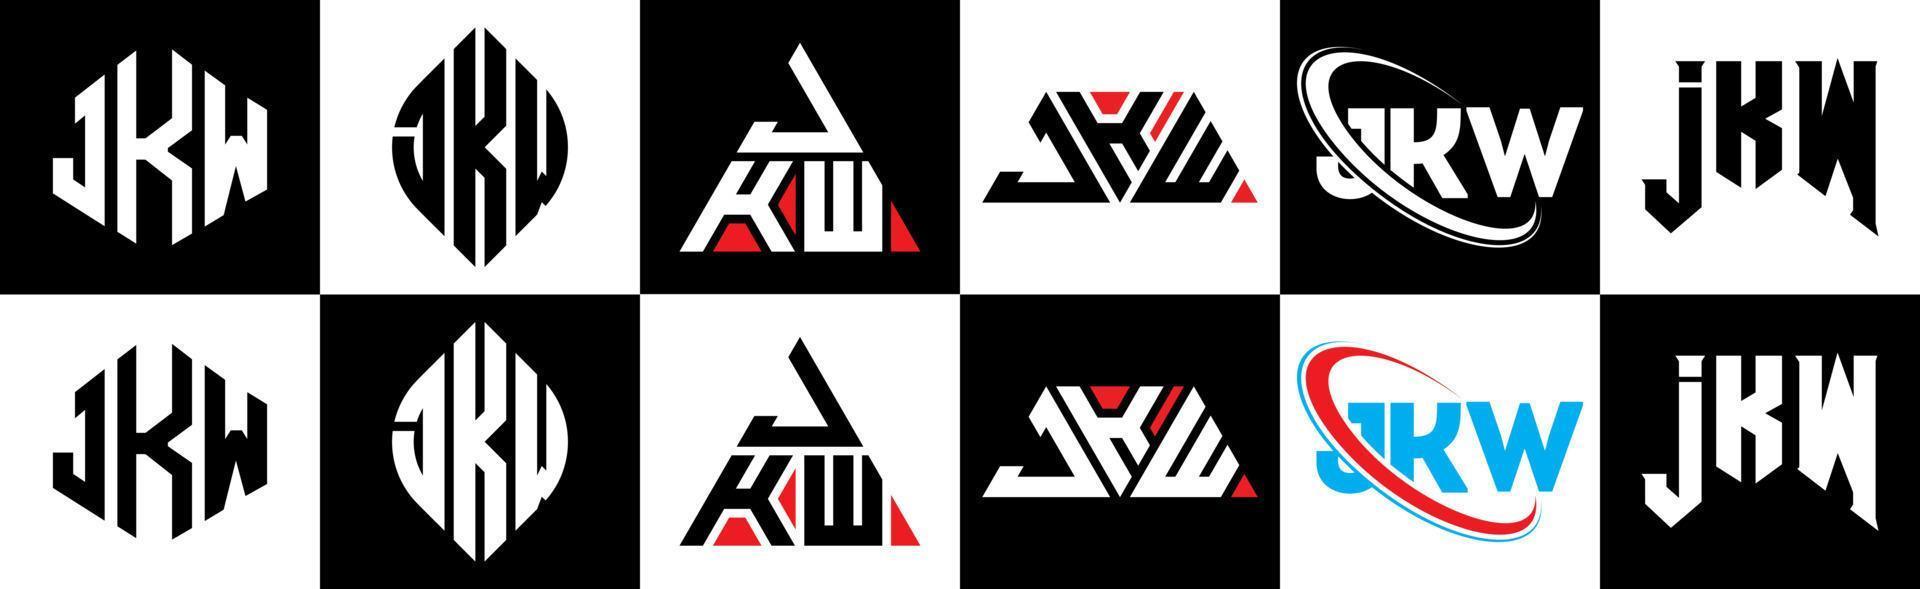 création de logo de lettre jkw en six styles. jkw polygone, cercle, triangle, hexagone, style plat et simple avec logo de lettre de variation de couleur noir et blanc dans un plan de travail. jkw logo minimaliste et classique vecteur